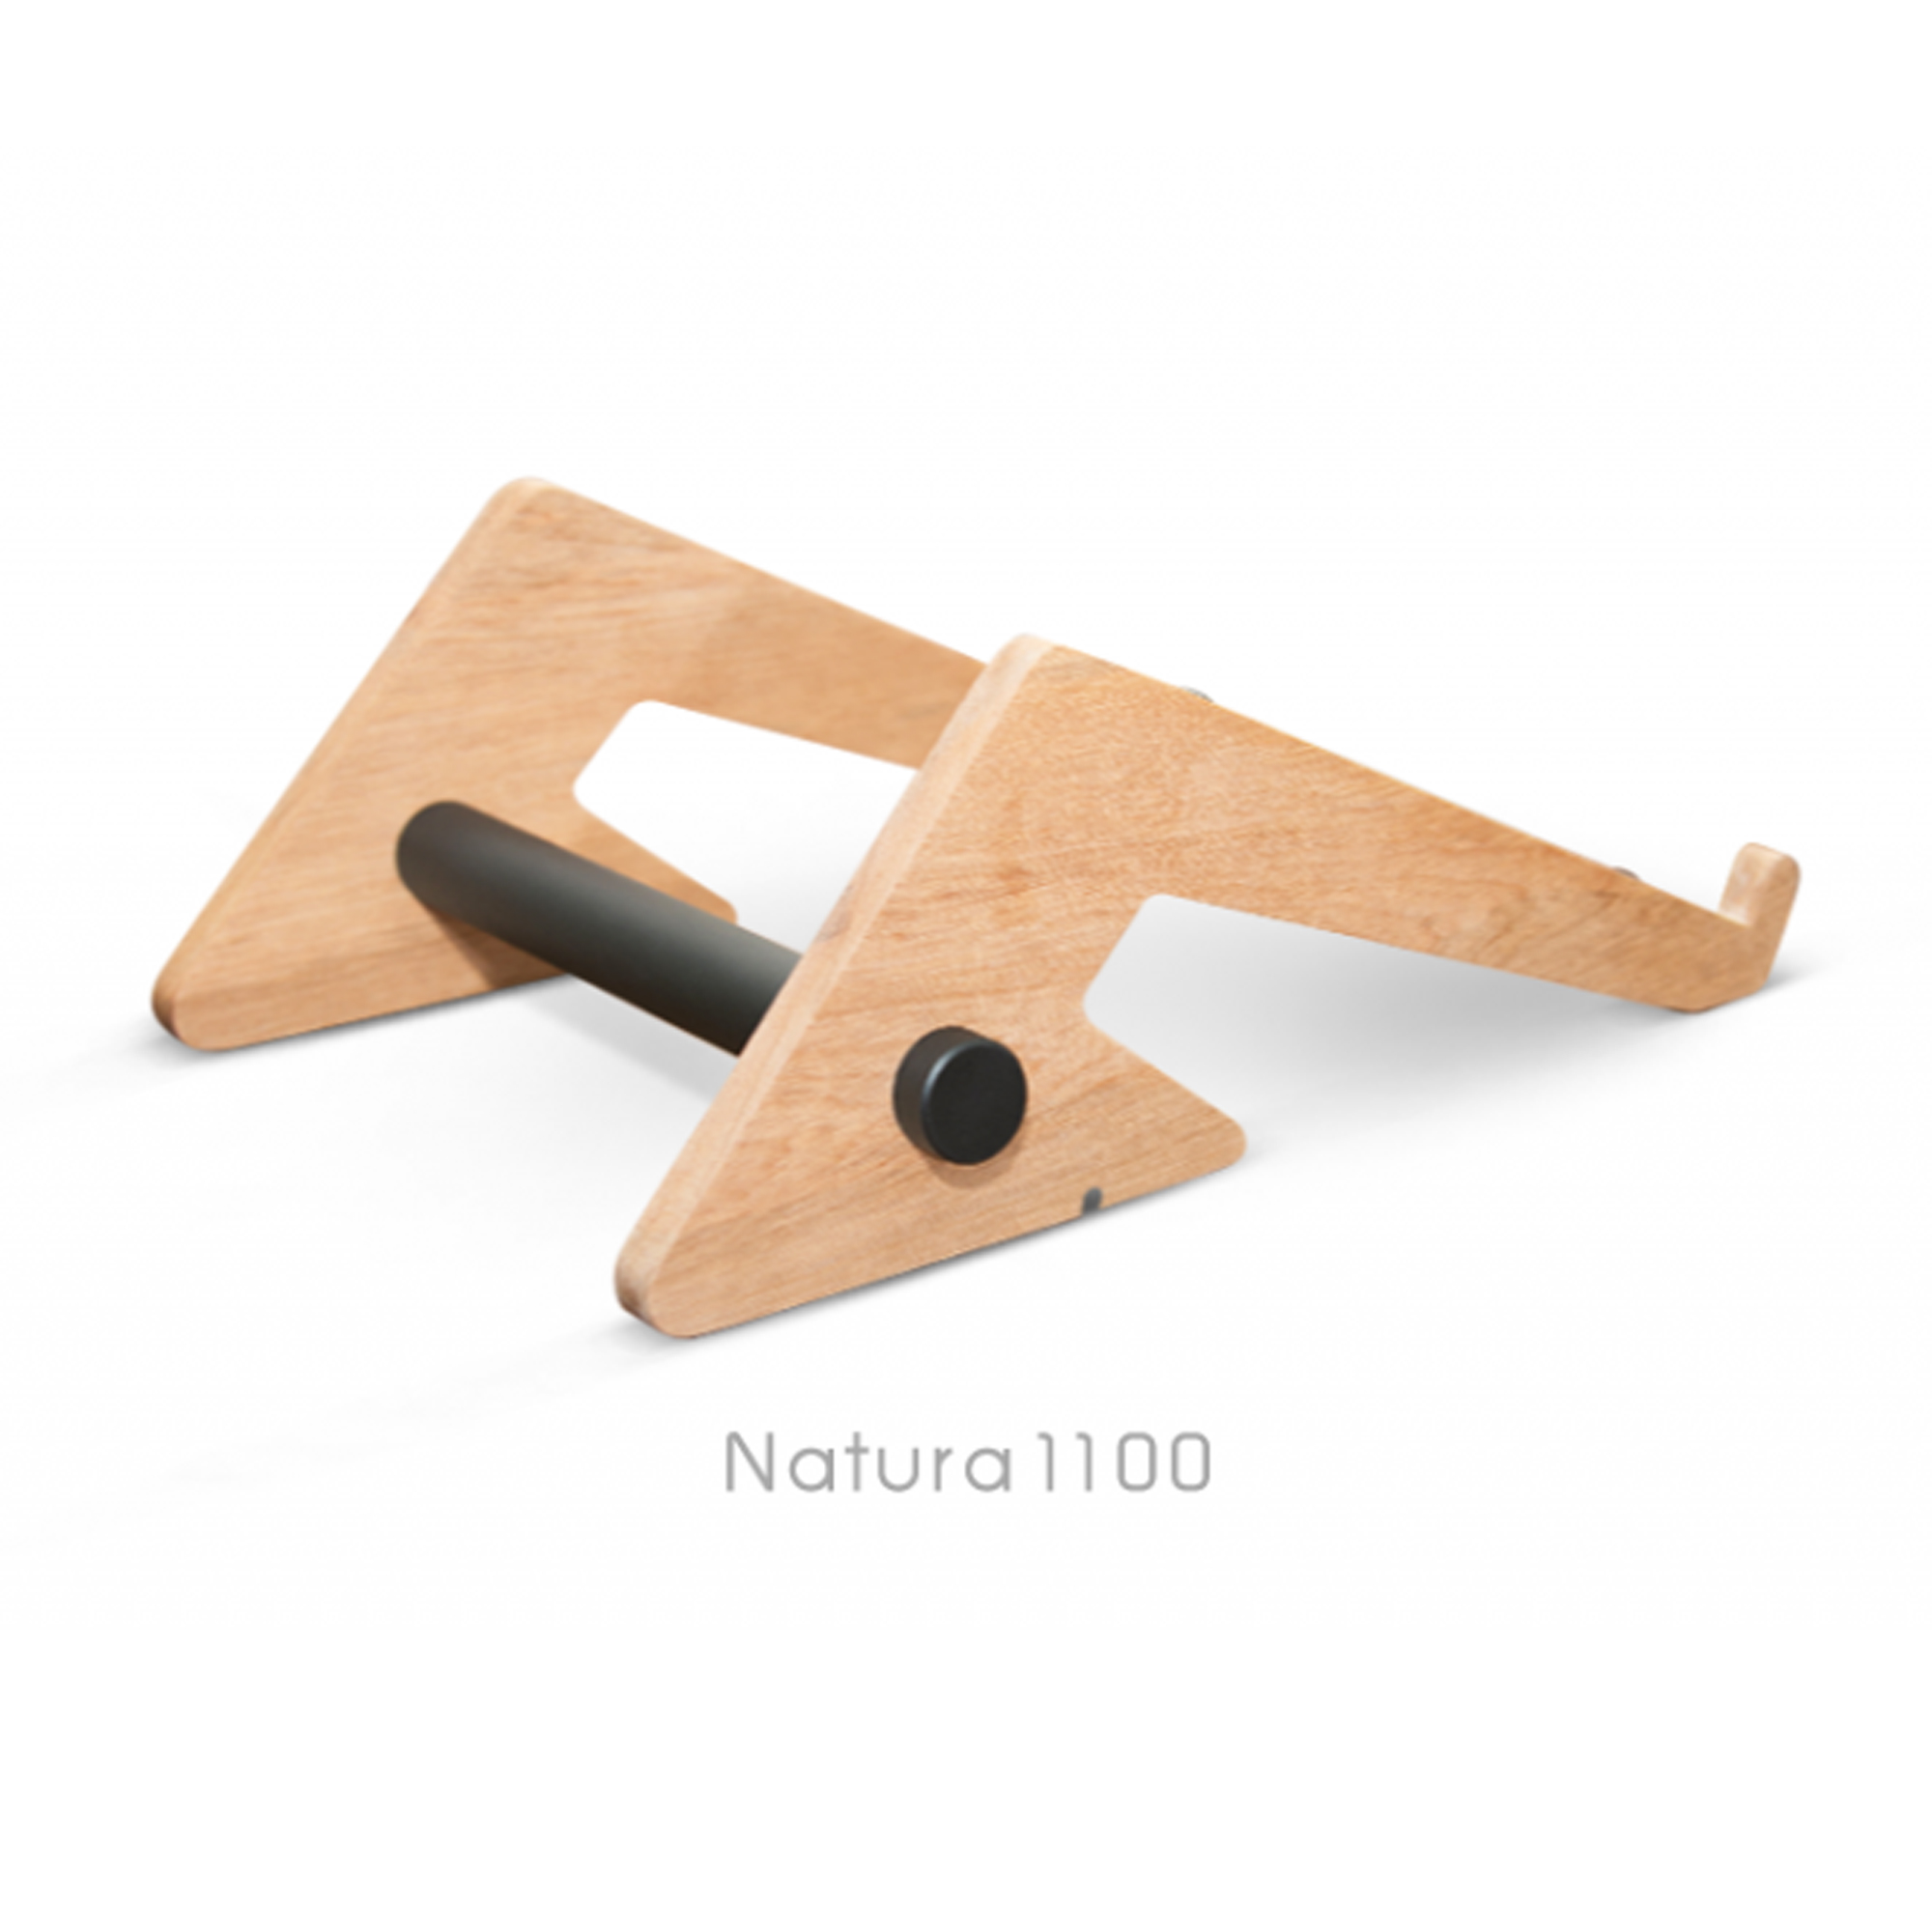 Natura 1100